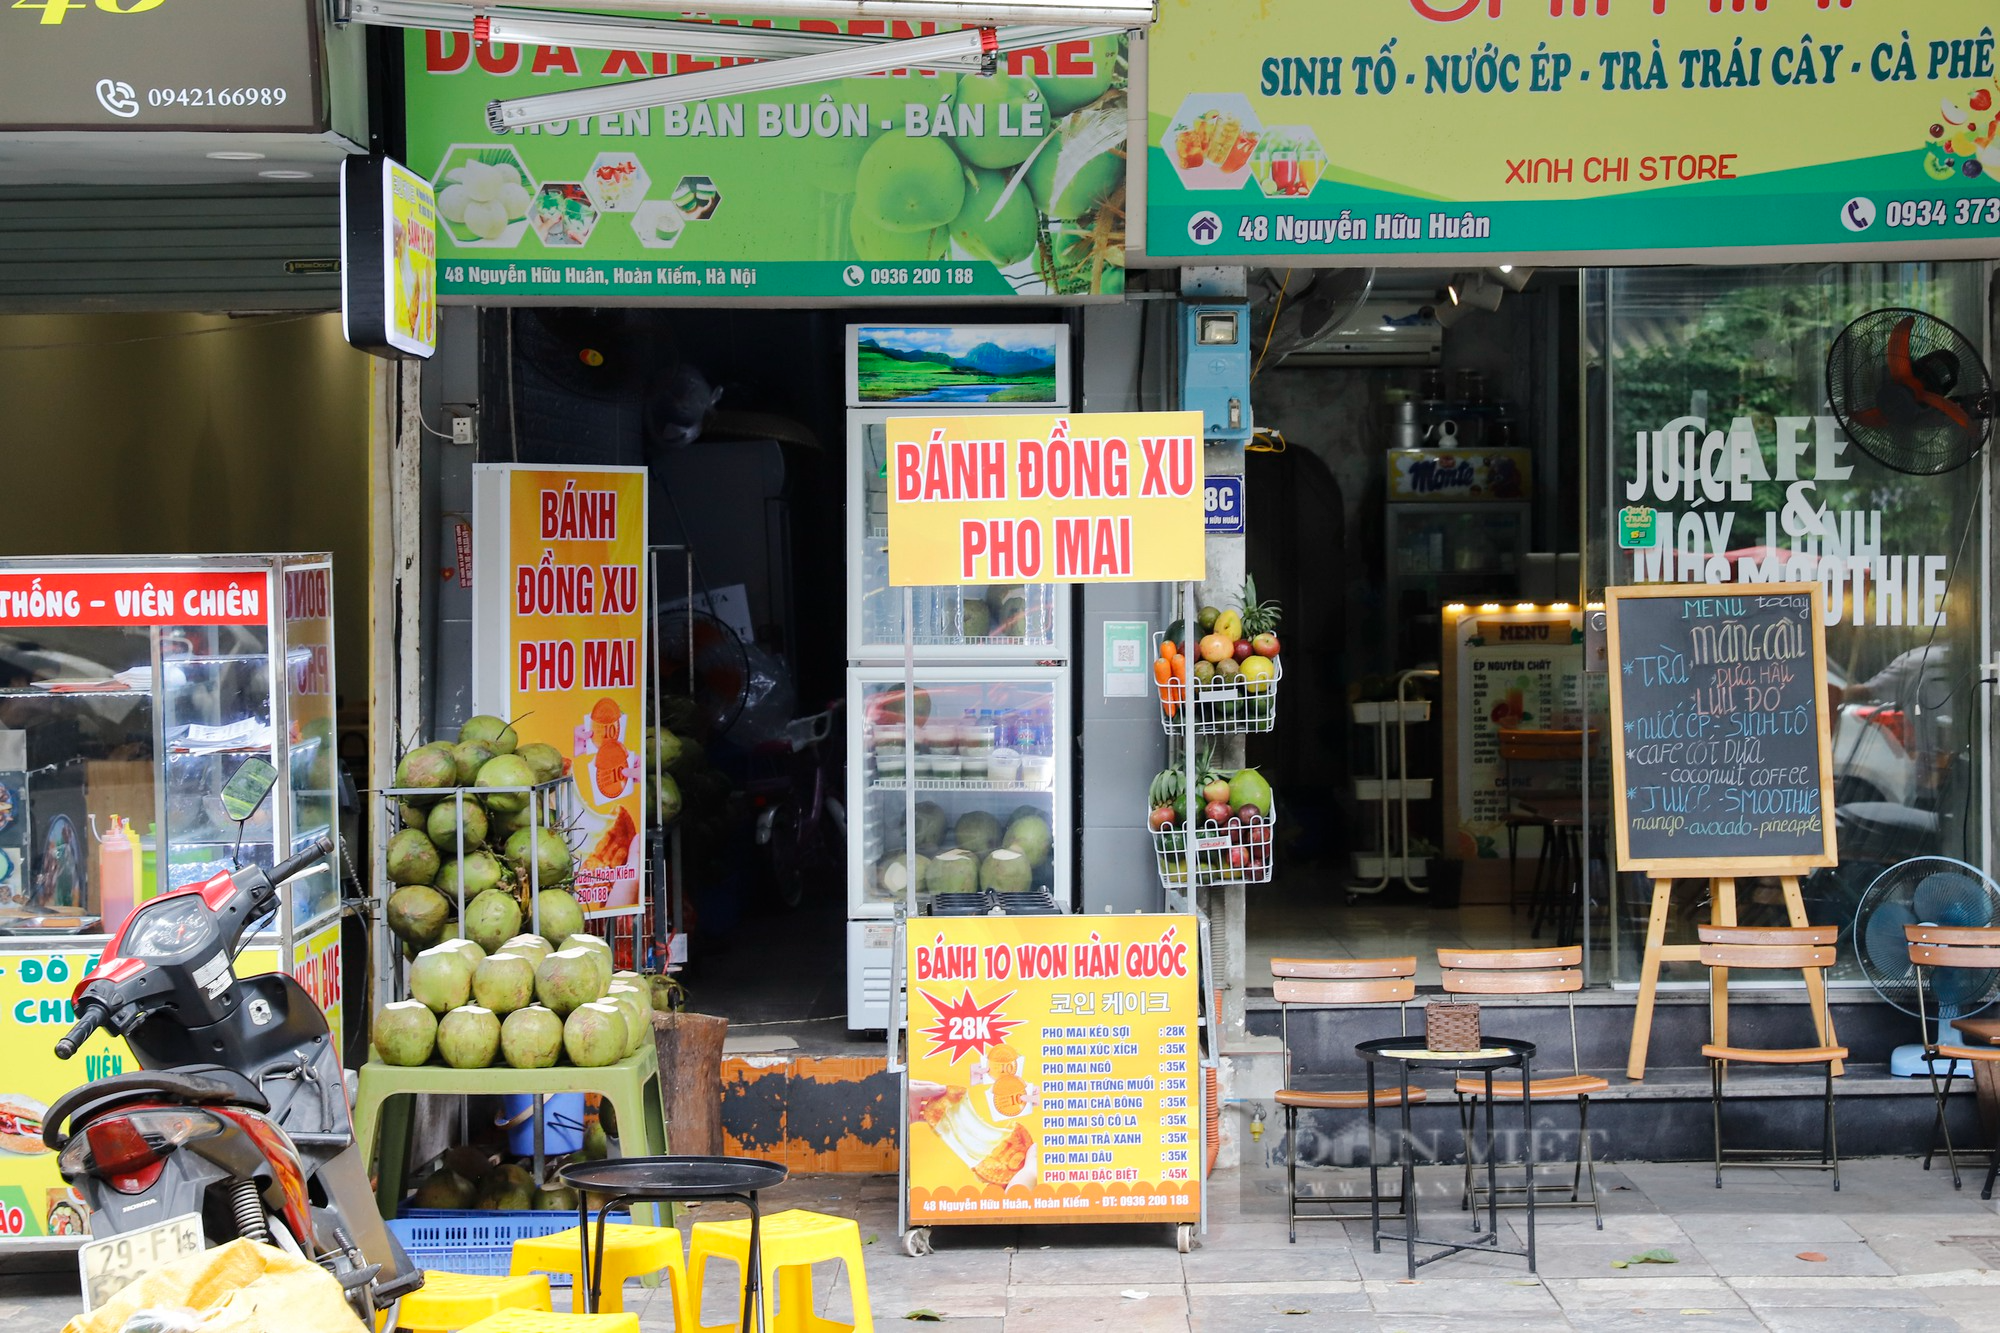 Sau hơn 1 tháng gây sốt, bánh đồng xu phô mai chính thức rơi vào cảnh ế ẩm khắp các phố tại Hà Nội - Ảnh 12.